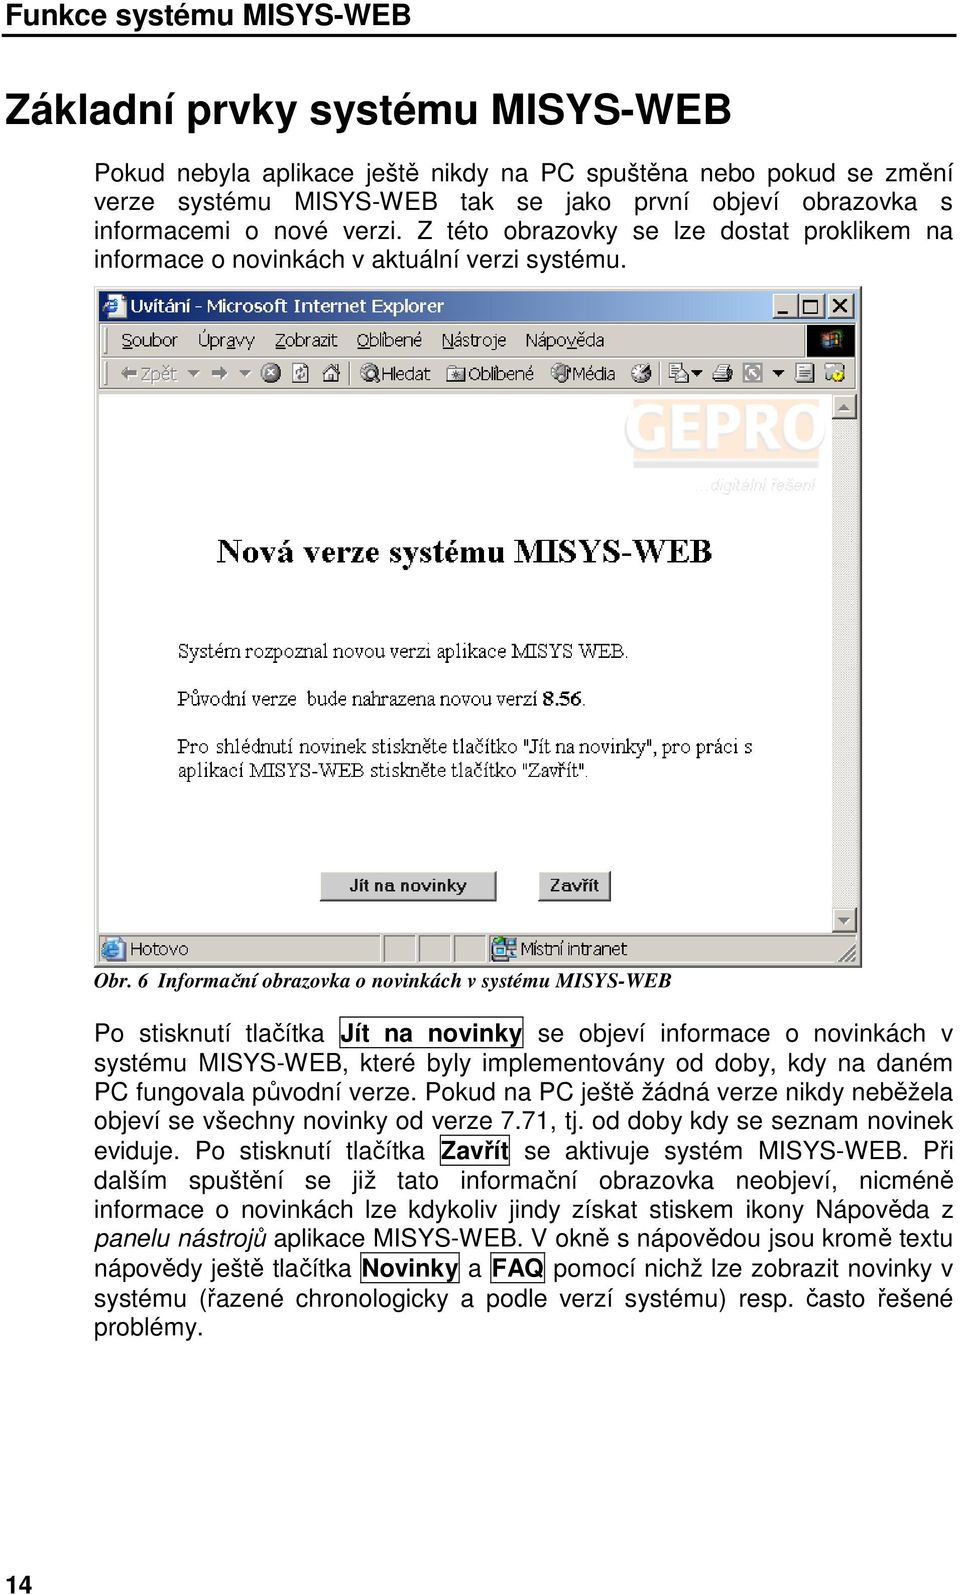 6 Informační obrazovka o novinkách v systému MISYS-WEB Po stisknutí tlačítka Jít na novinky se objeví informace o novinkách v systému MISYS-WEB, které byly implementovány od doby, kdy na daném PC